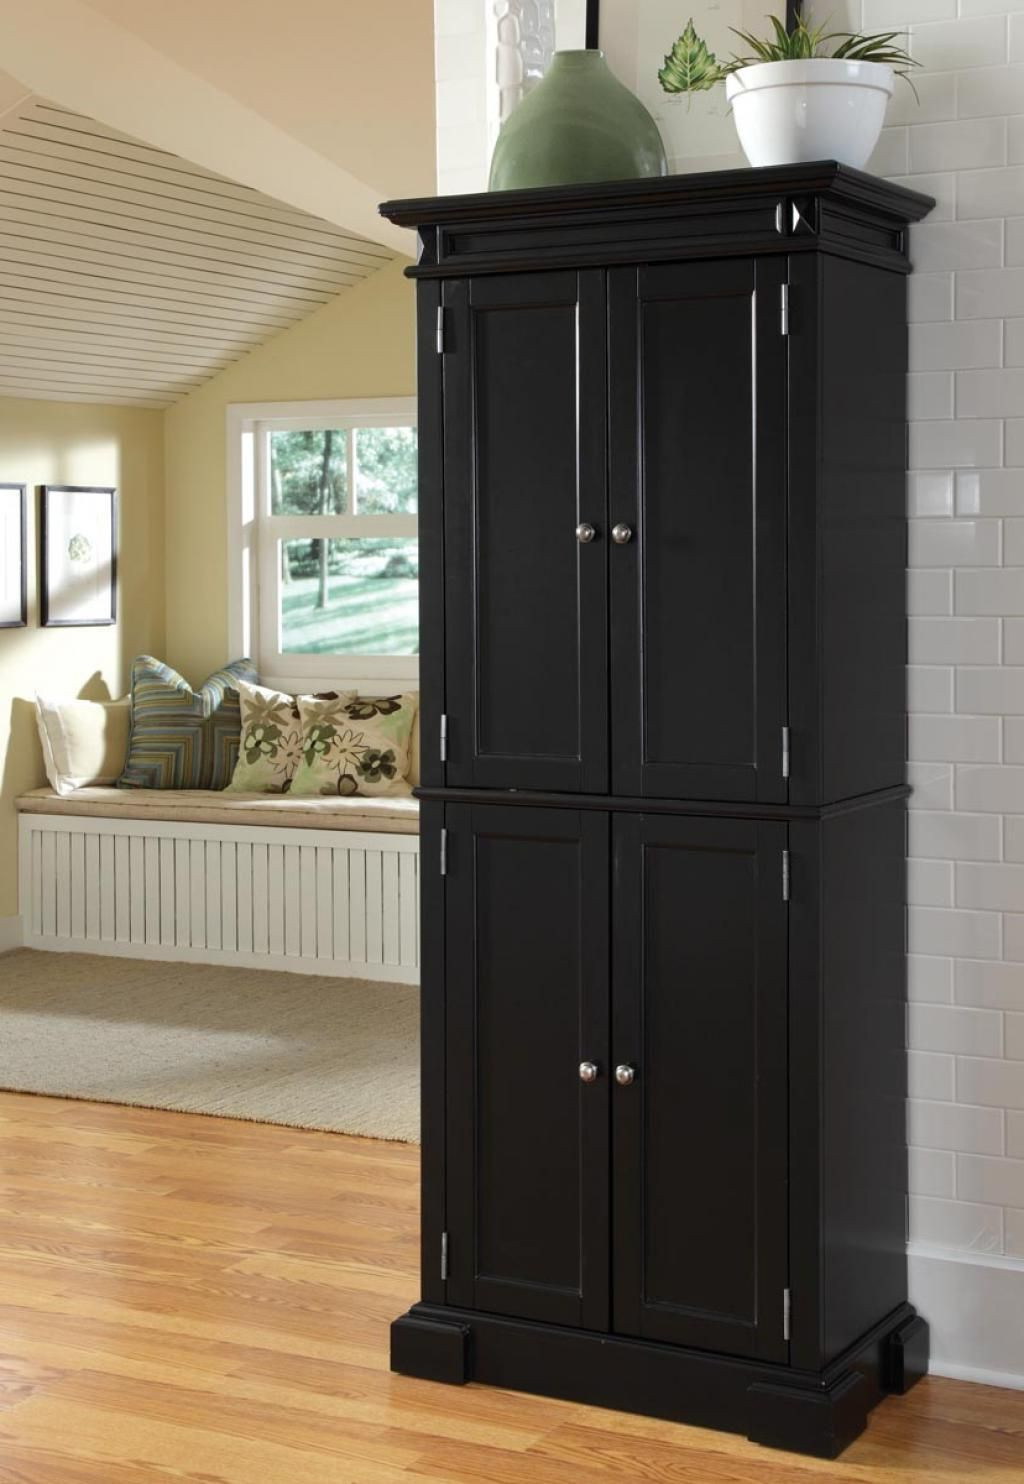 Black Kitchen Pantry Storage
 kitchen pantry cabinet ideas baytownkitchen storage with